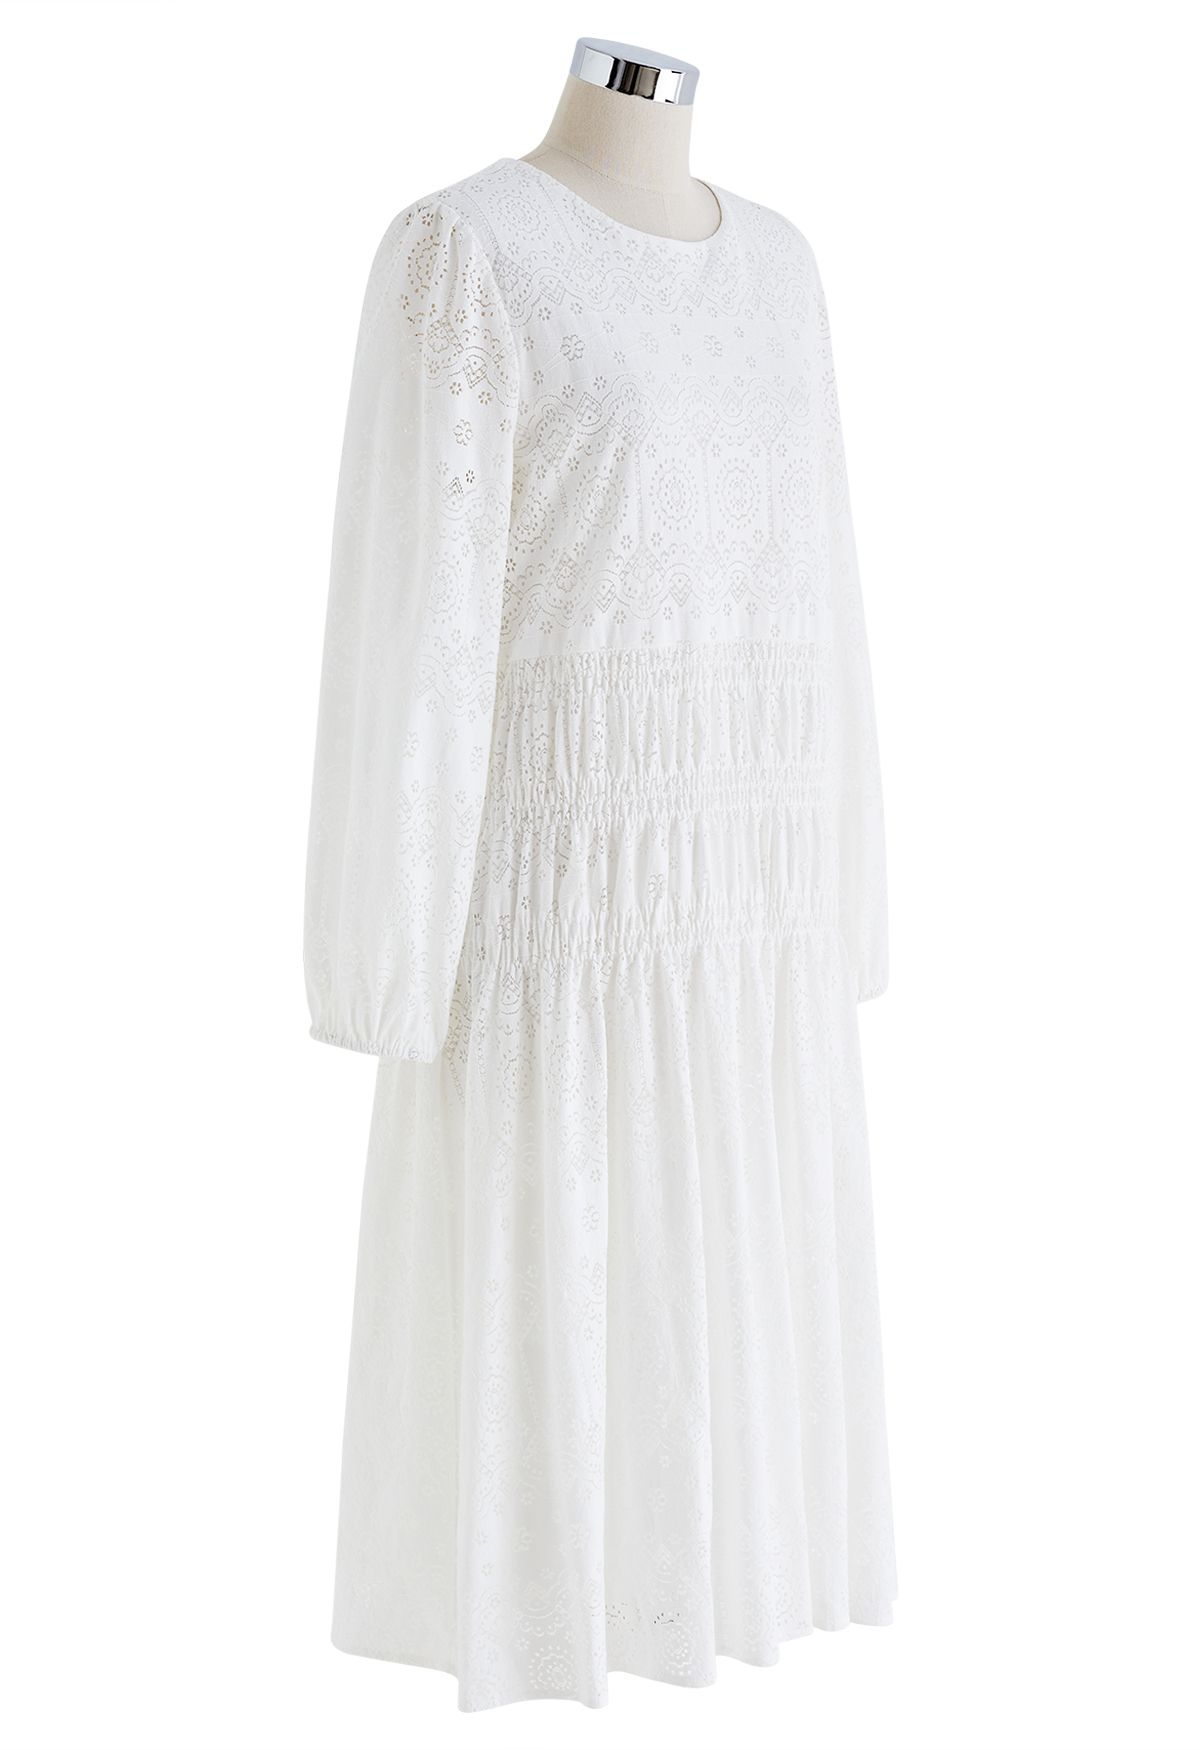 Delicate Floral Cutwork Midi Dress in White - Retro, Indie and Unique ...